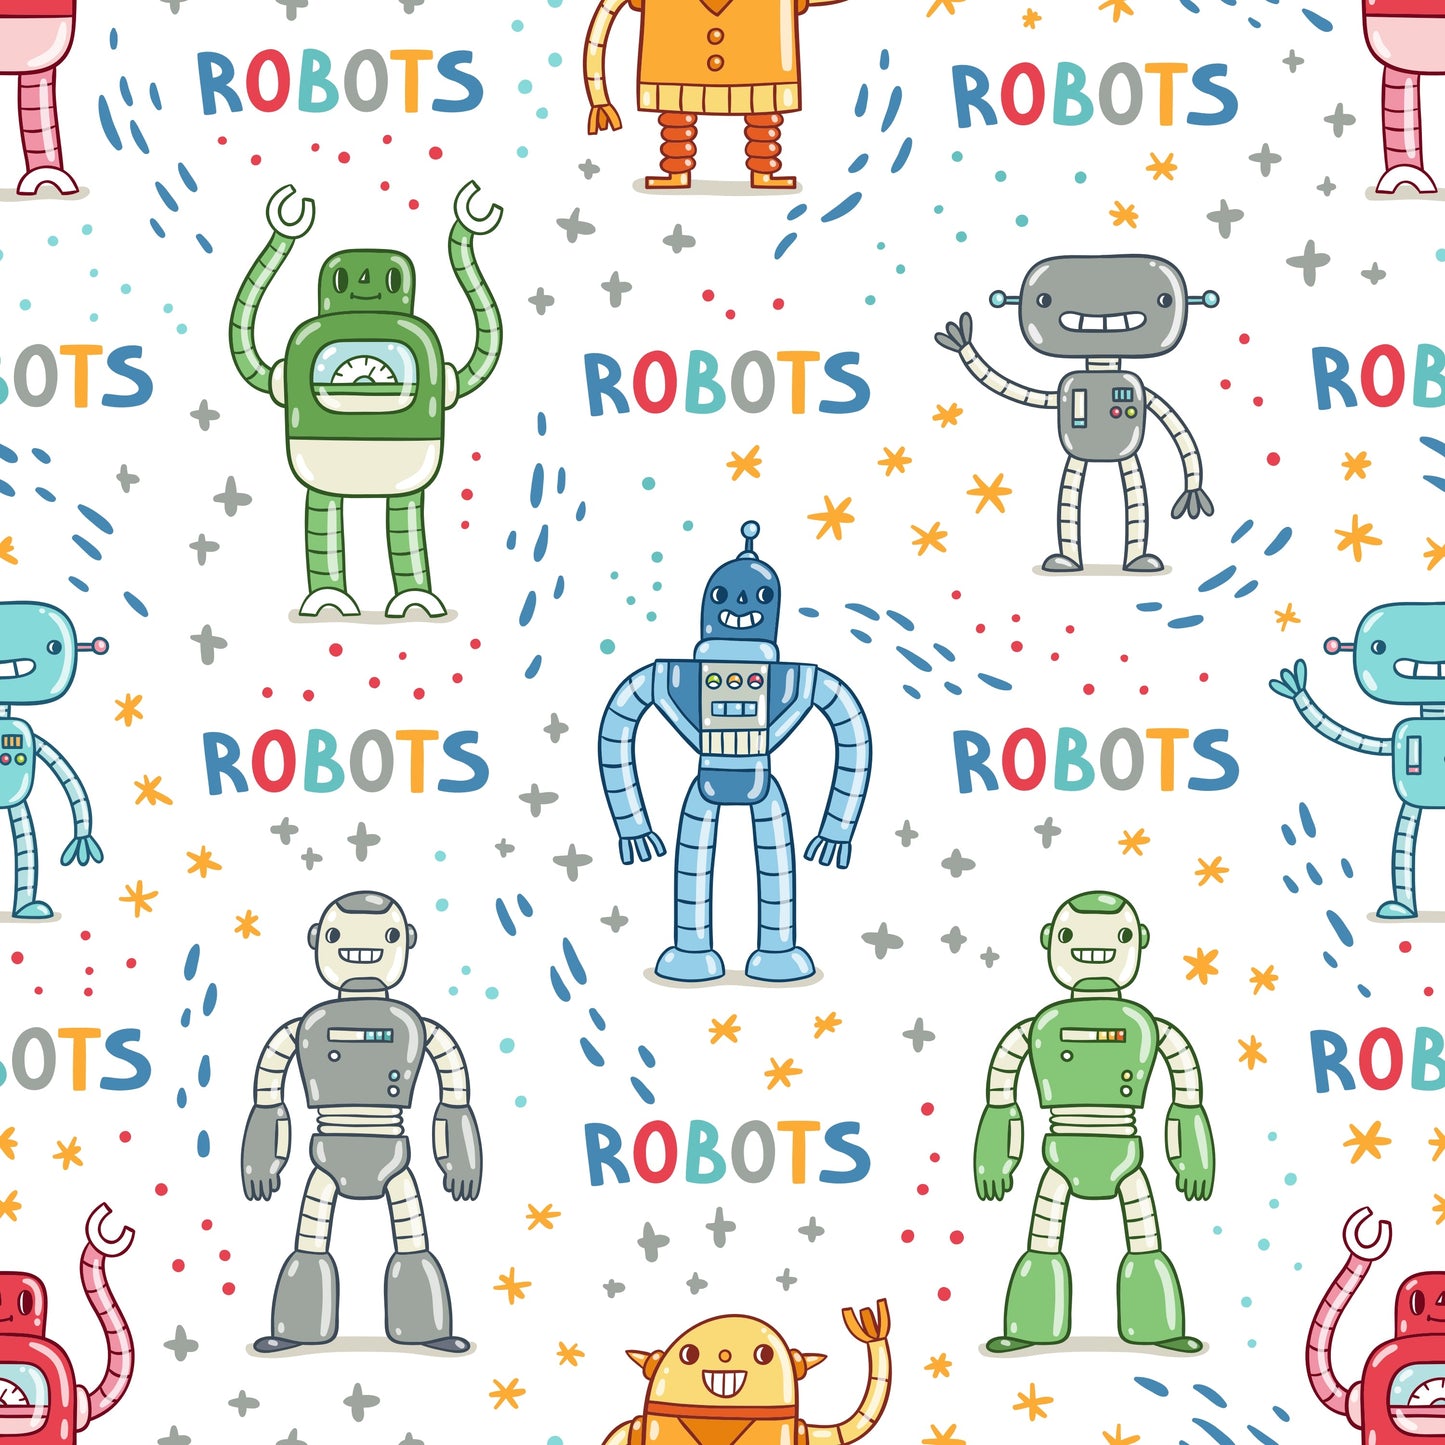 Robots (Adhesive Vinyl - 12" x 12" Printed Sheet)